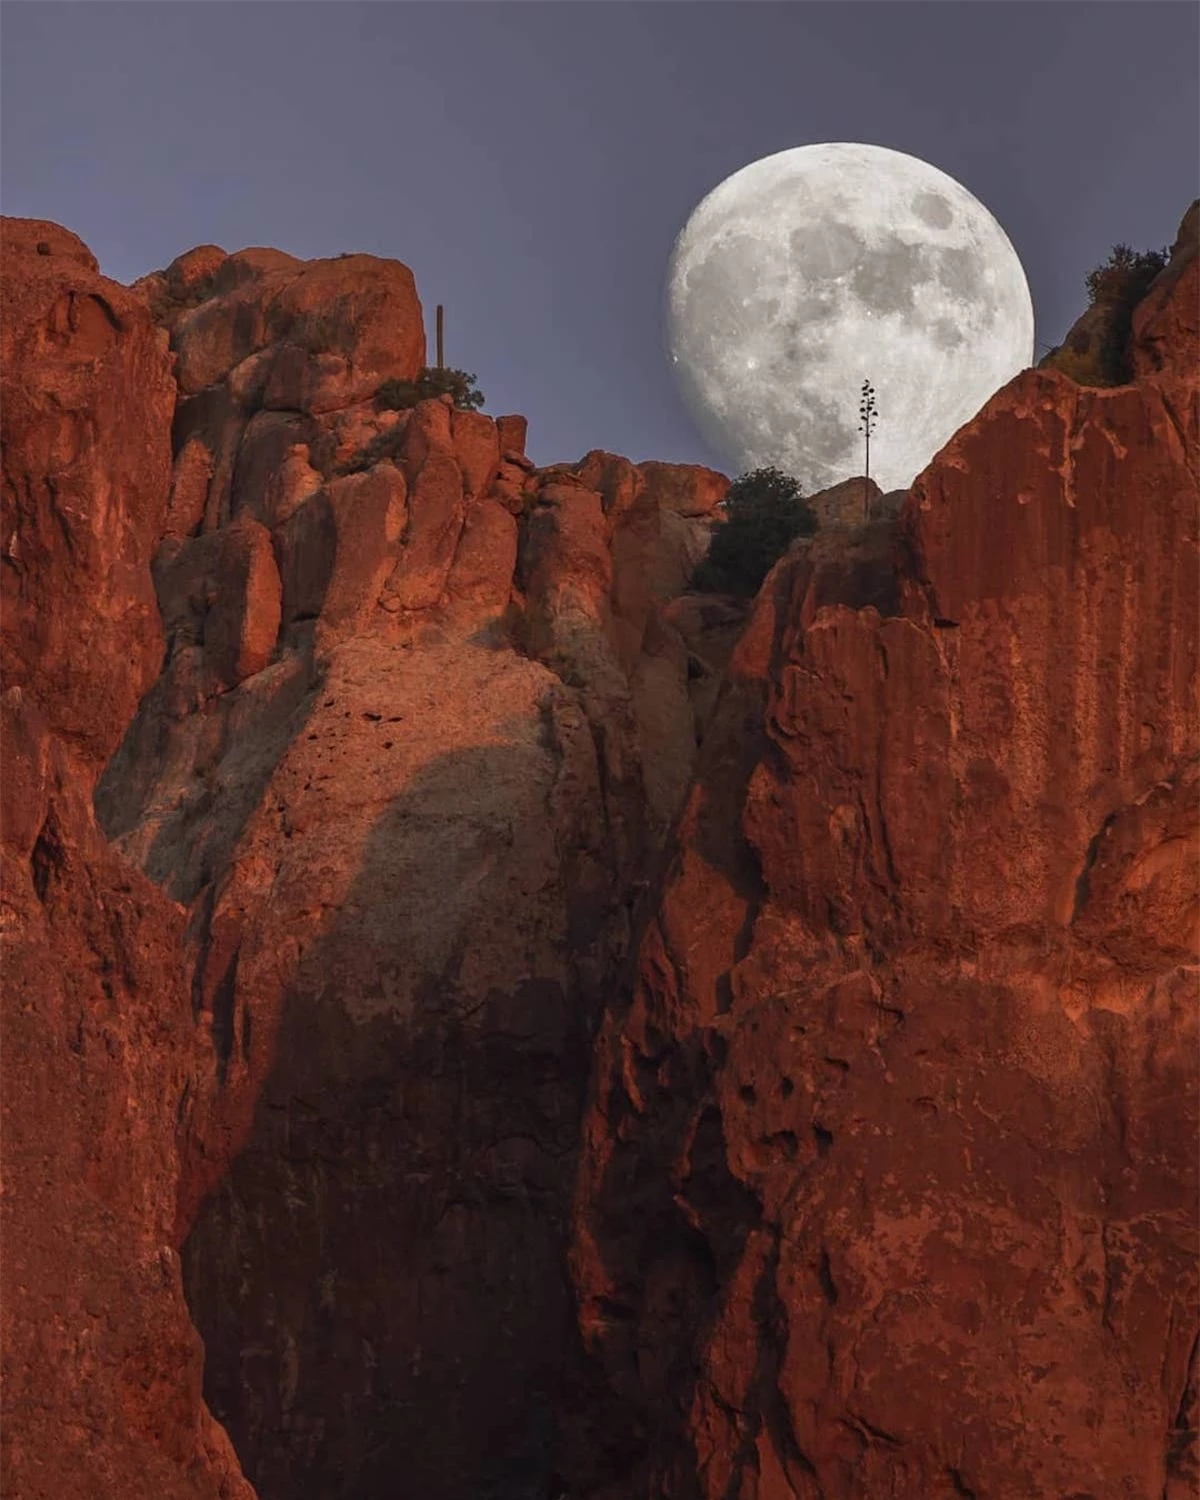 Hình ảnh siêu thực về mặt trăng khổng lồ trong sa mạc - Ảnh 9.